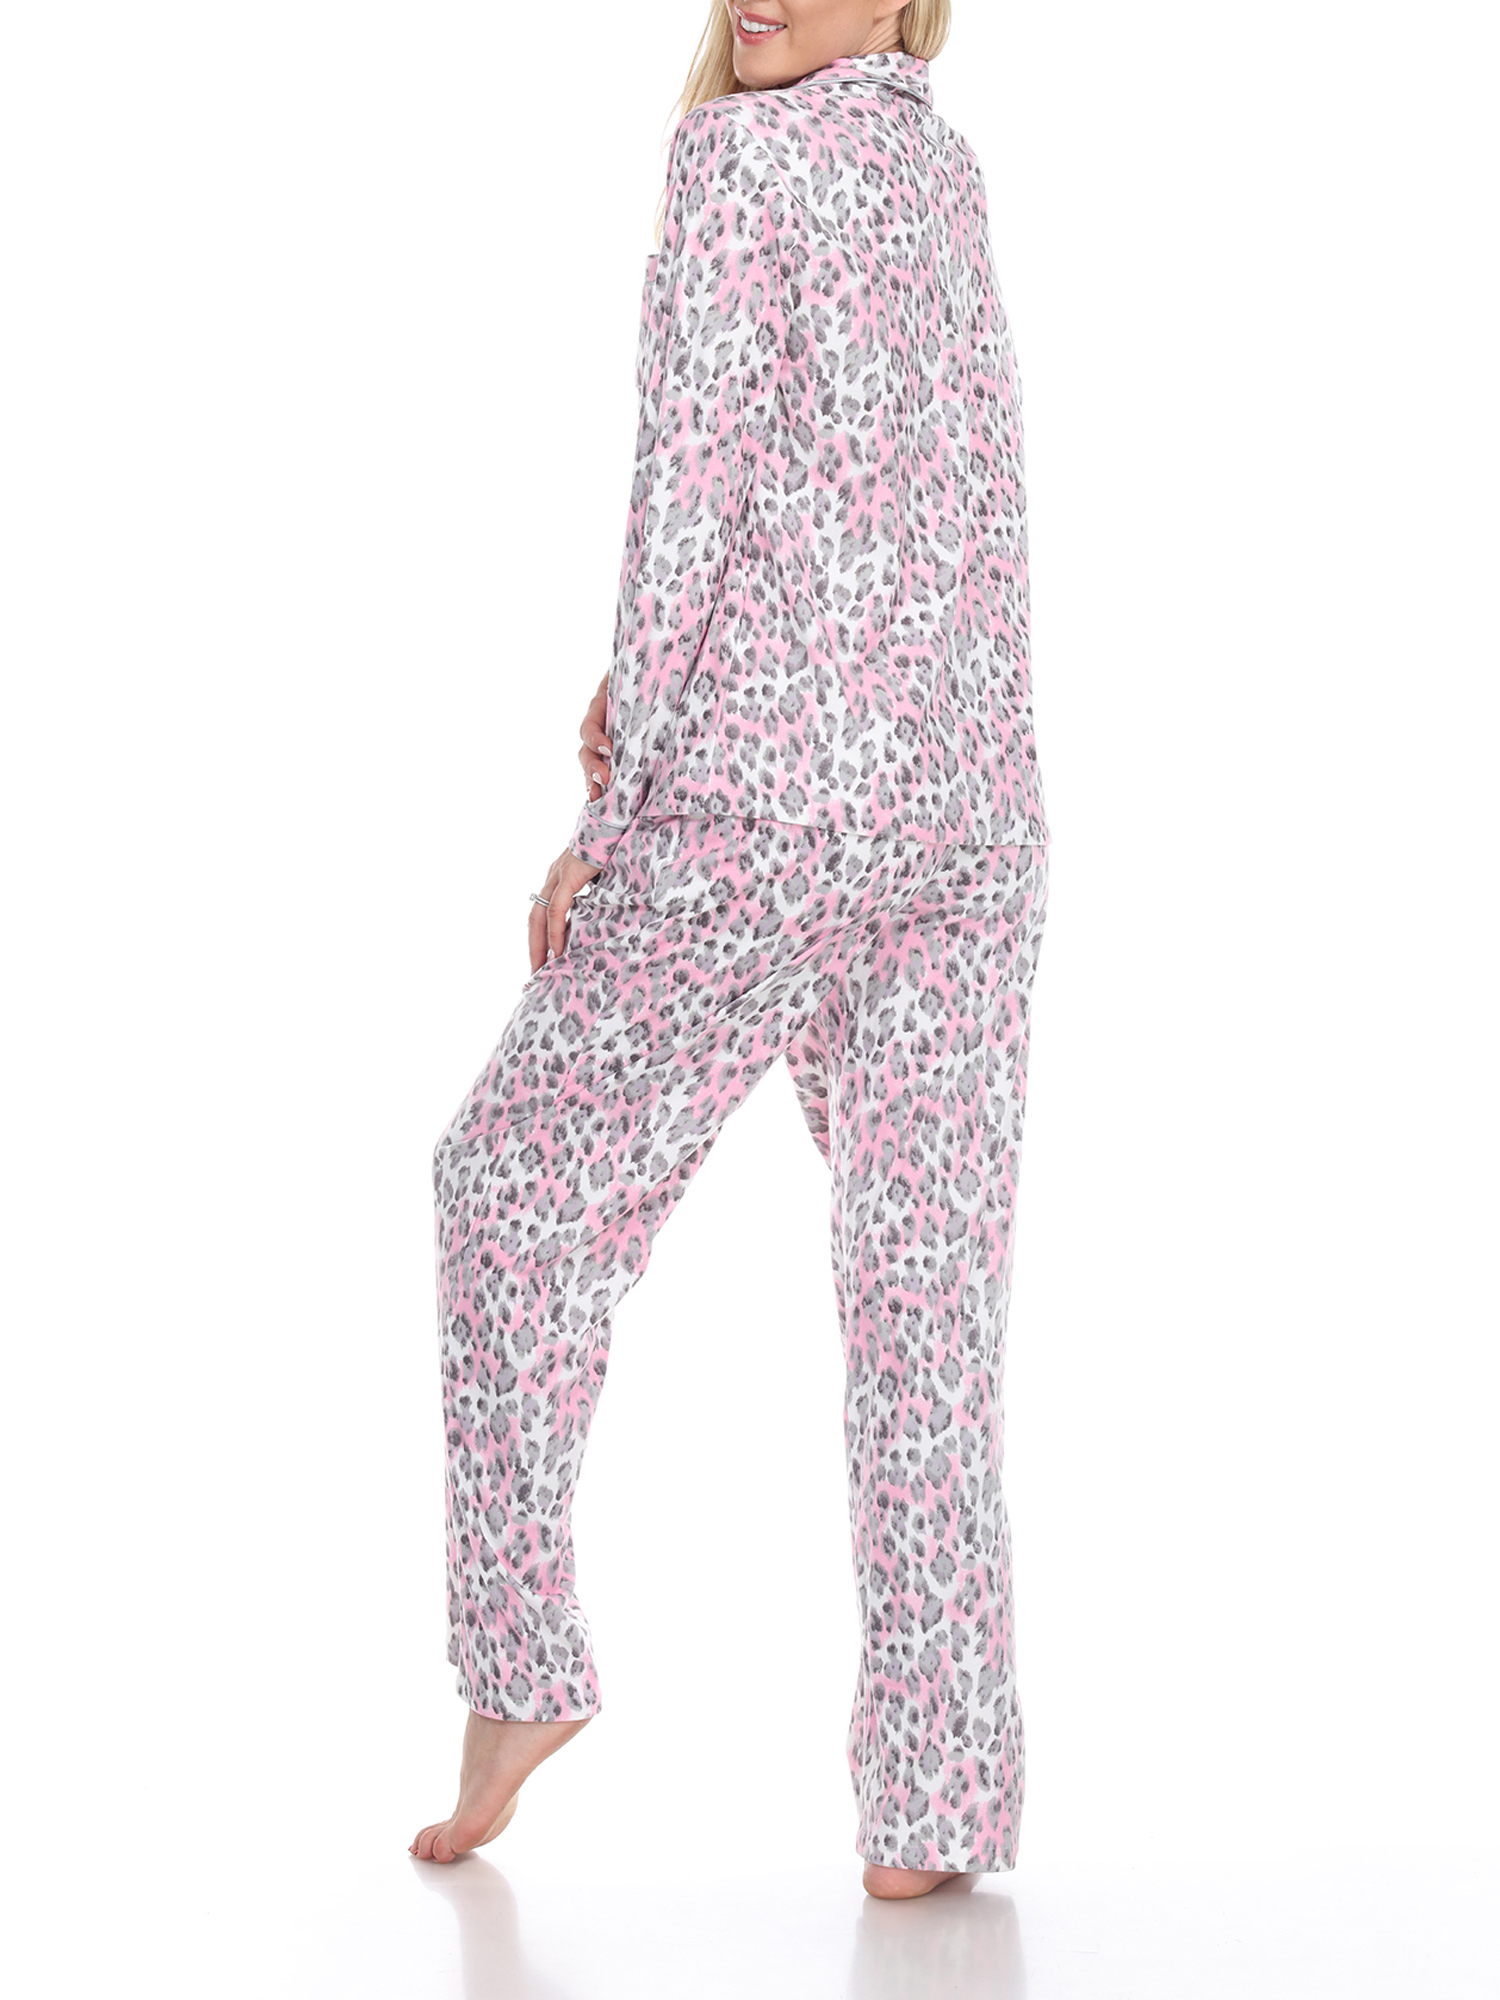 White Mark Women's Pajama Set - Extended Sizes - image 4 of 4